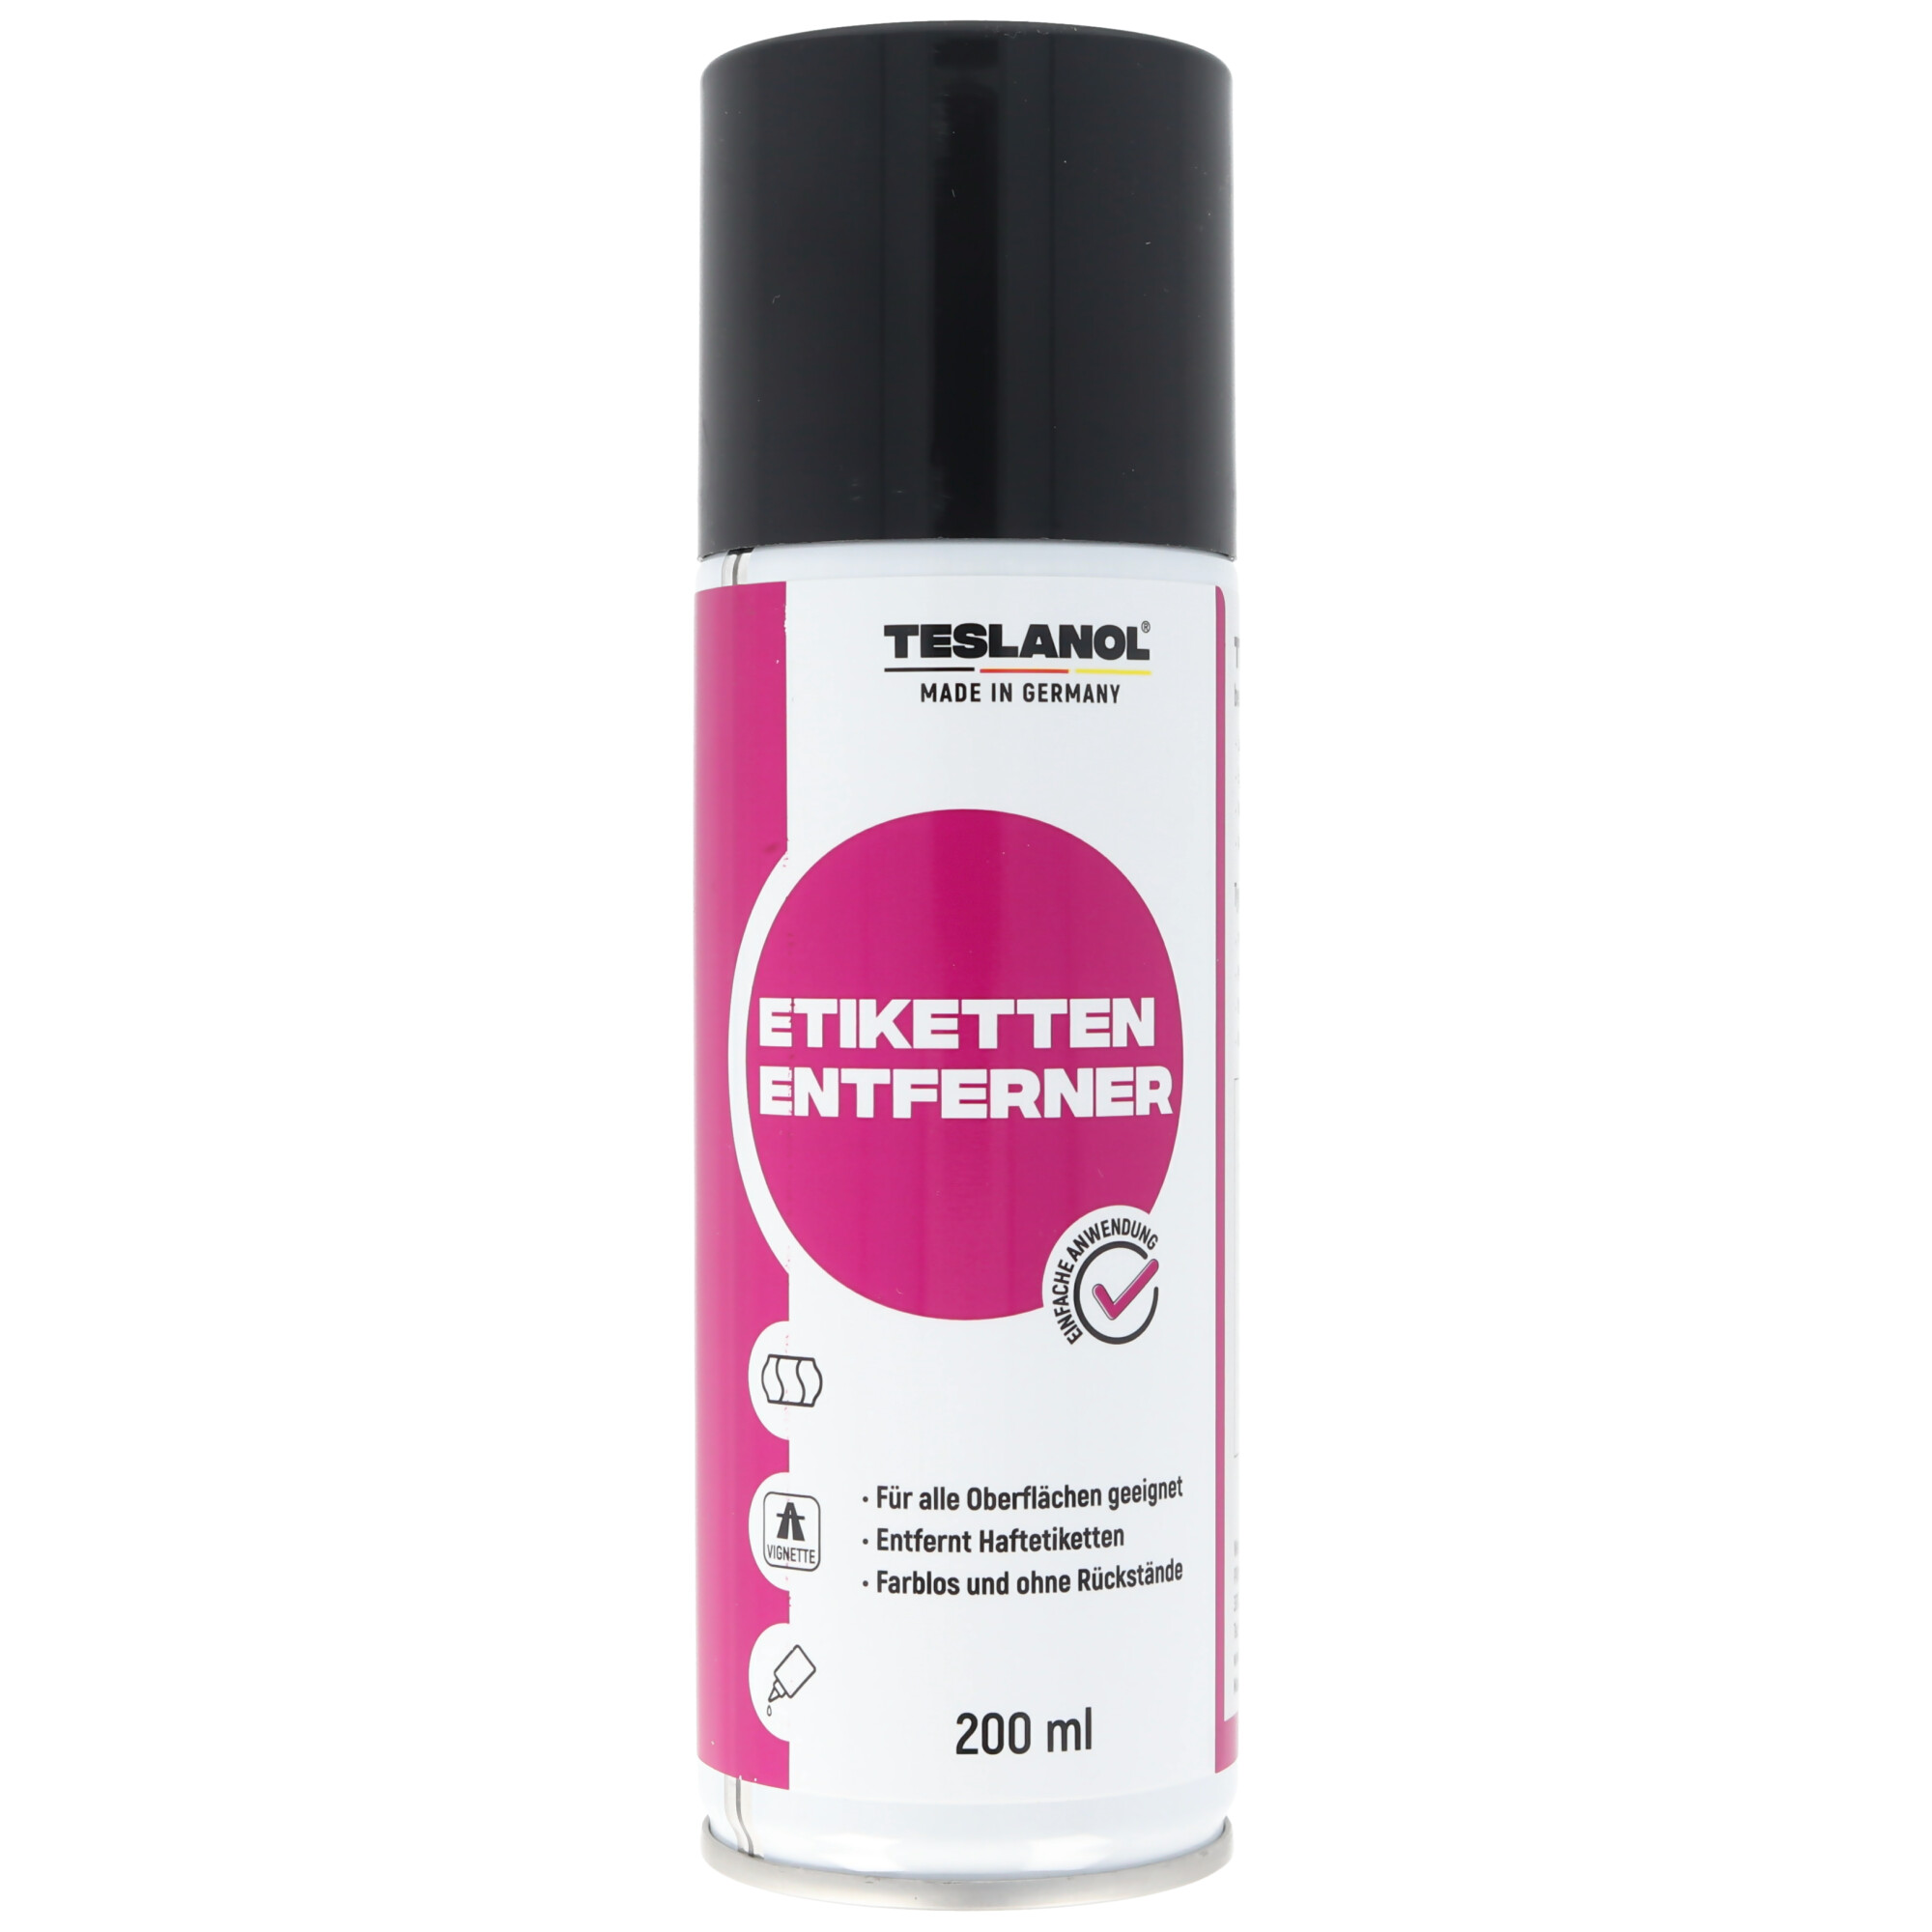 Teslanol Etiketten-Entferner 200ml Label off löst Haftetiketten, Teslanol-Sprays, Werkzeuge / Werkstatt / Auto